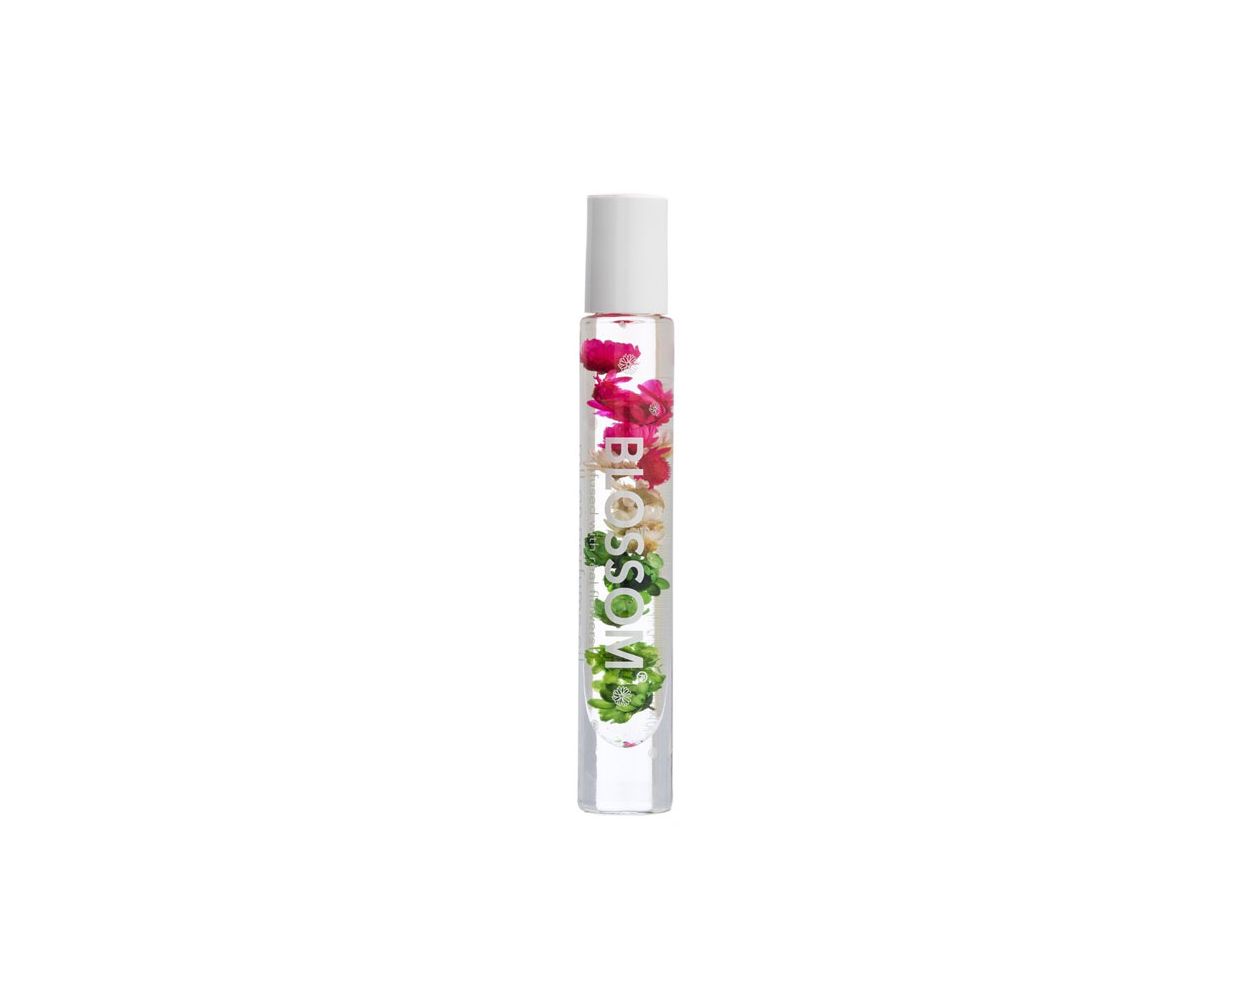 Blossom Cactus Flower Perfume 0.2oz